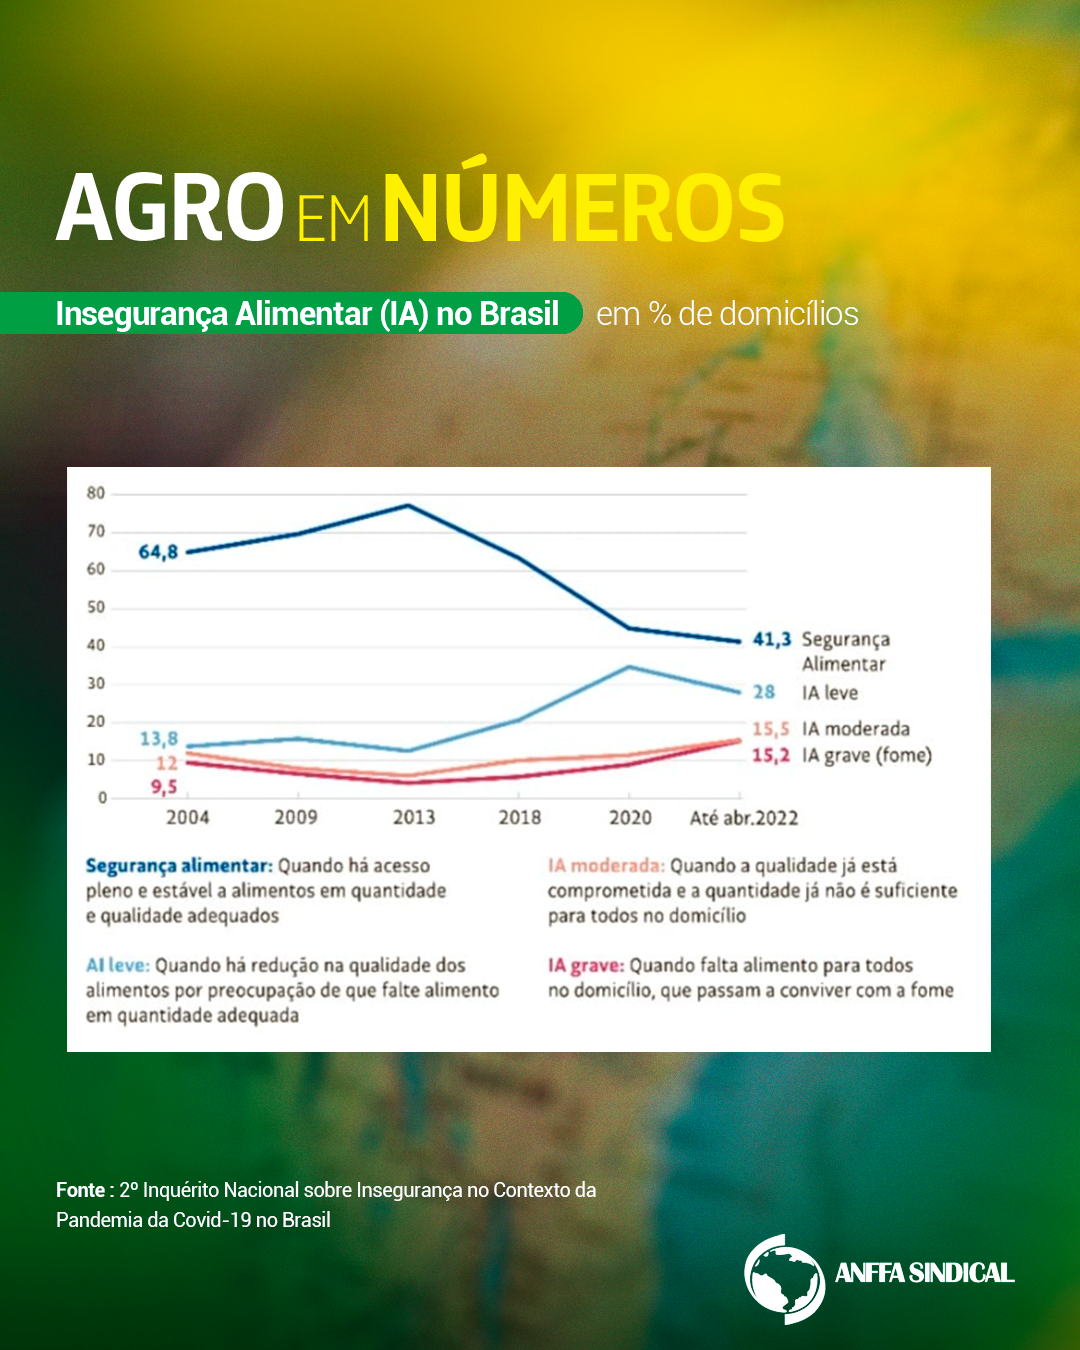 Insegurança Alimentar (IA) no Brasil em % de domicílios